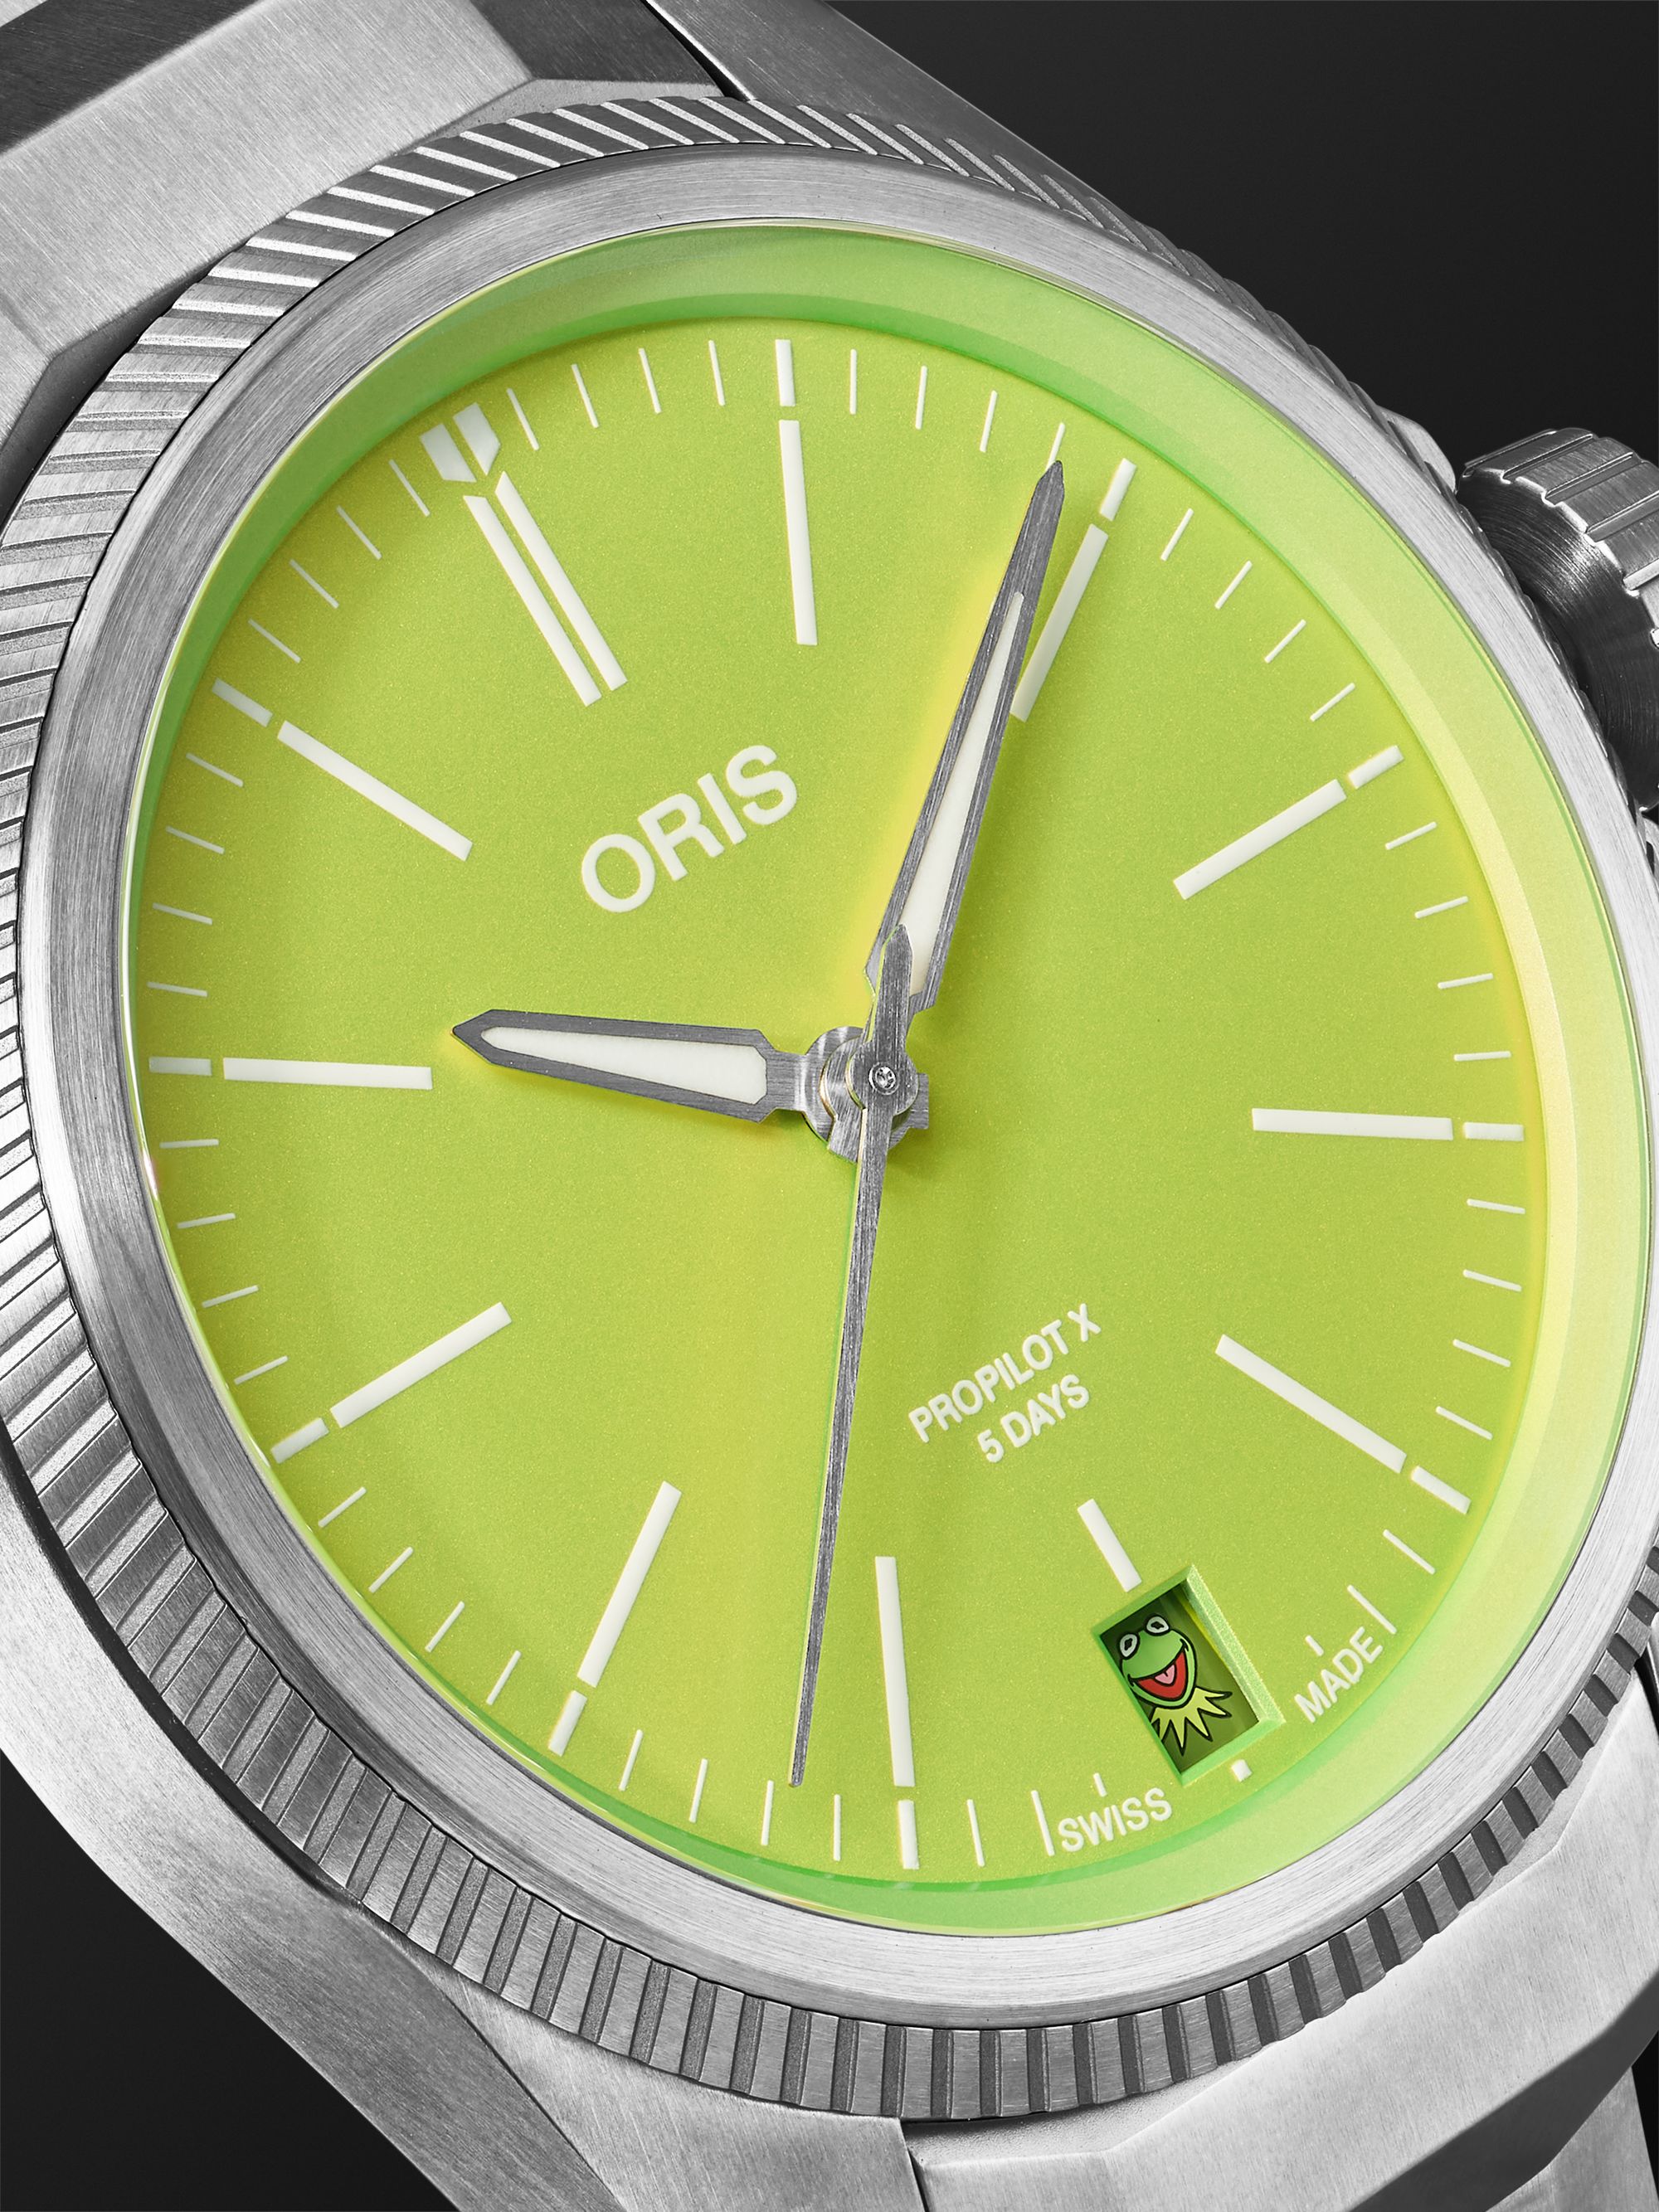 ORIS ساعة ProPilot X Kermit ذات الإصدار المحدود من التيتانيوم بقطر 39 مم، الرقم المرجعي TLCGreen‏ 01 20 7 07 -7157 7778 400 01